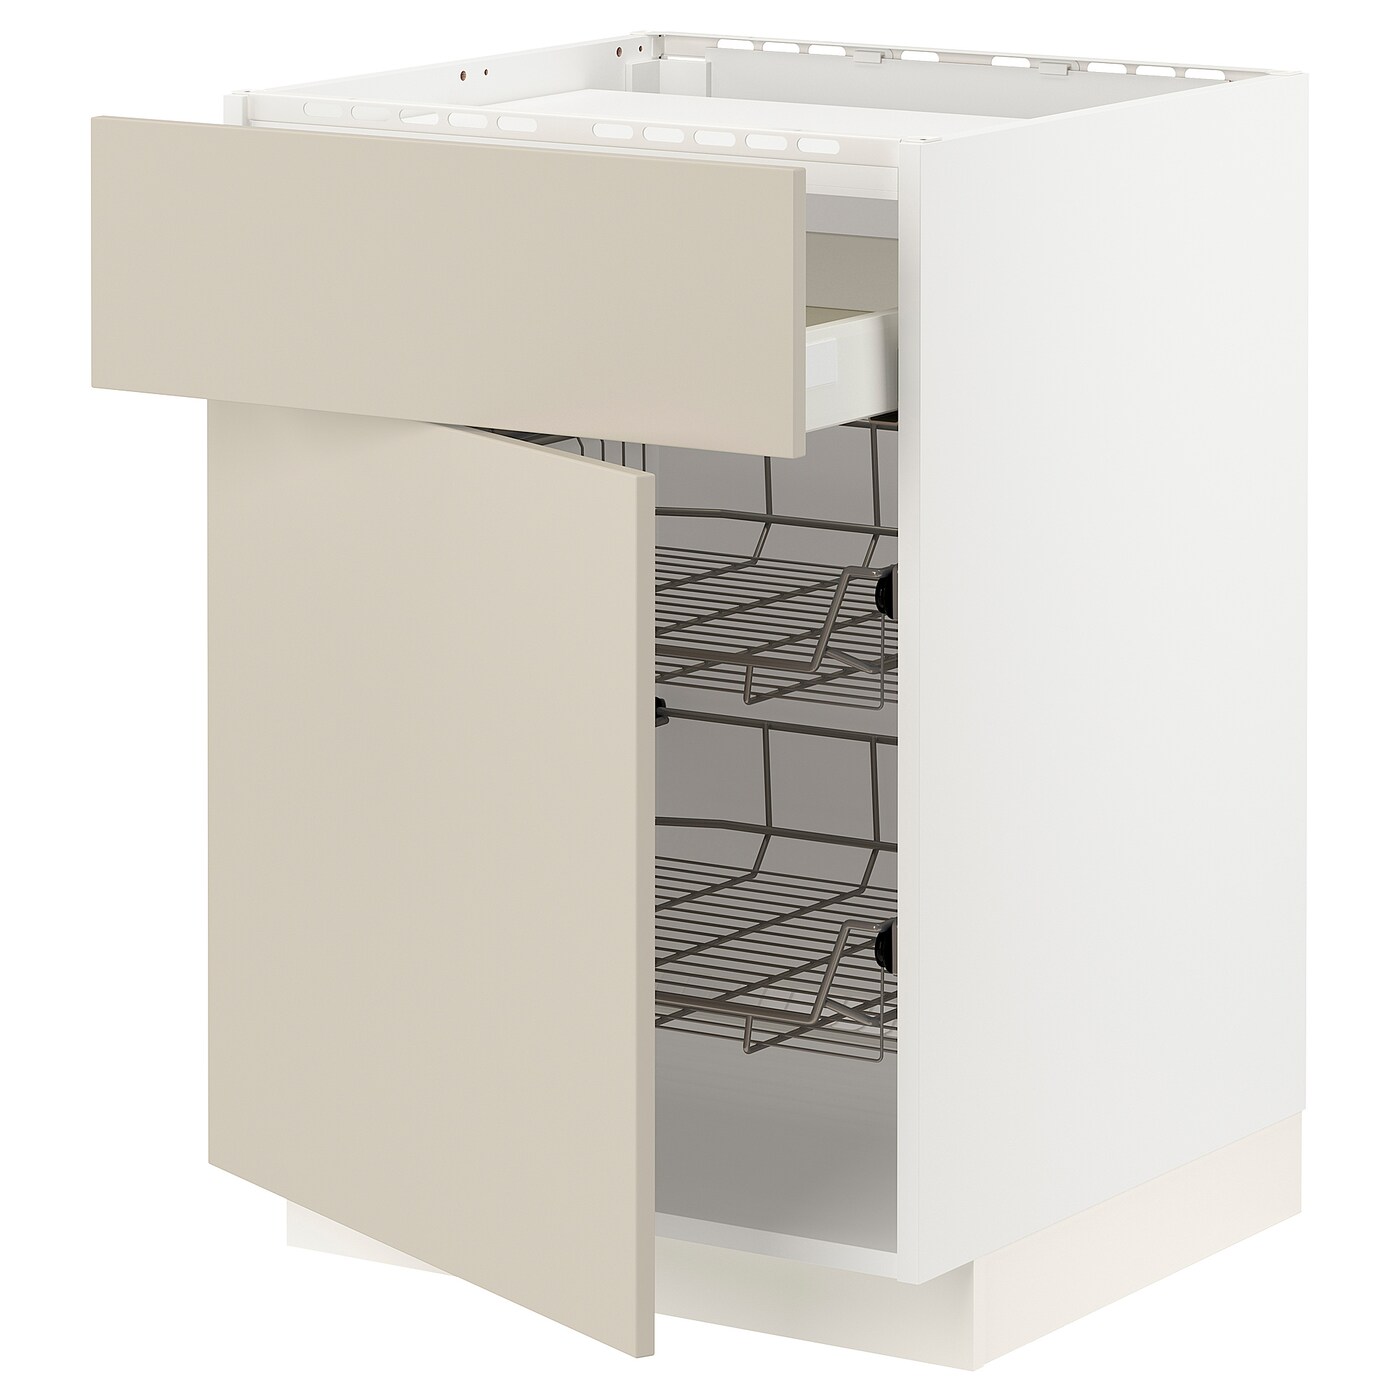 Напольный кухонный шкаф  - IKEA METOD MAXIMERA, 88x62x60см, белый/бежевый, МЕТОД МАКСИМЕРА ИКЕА